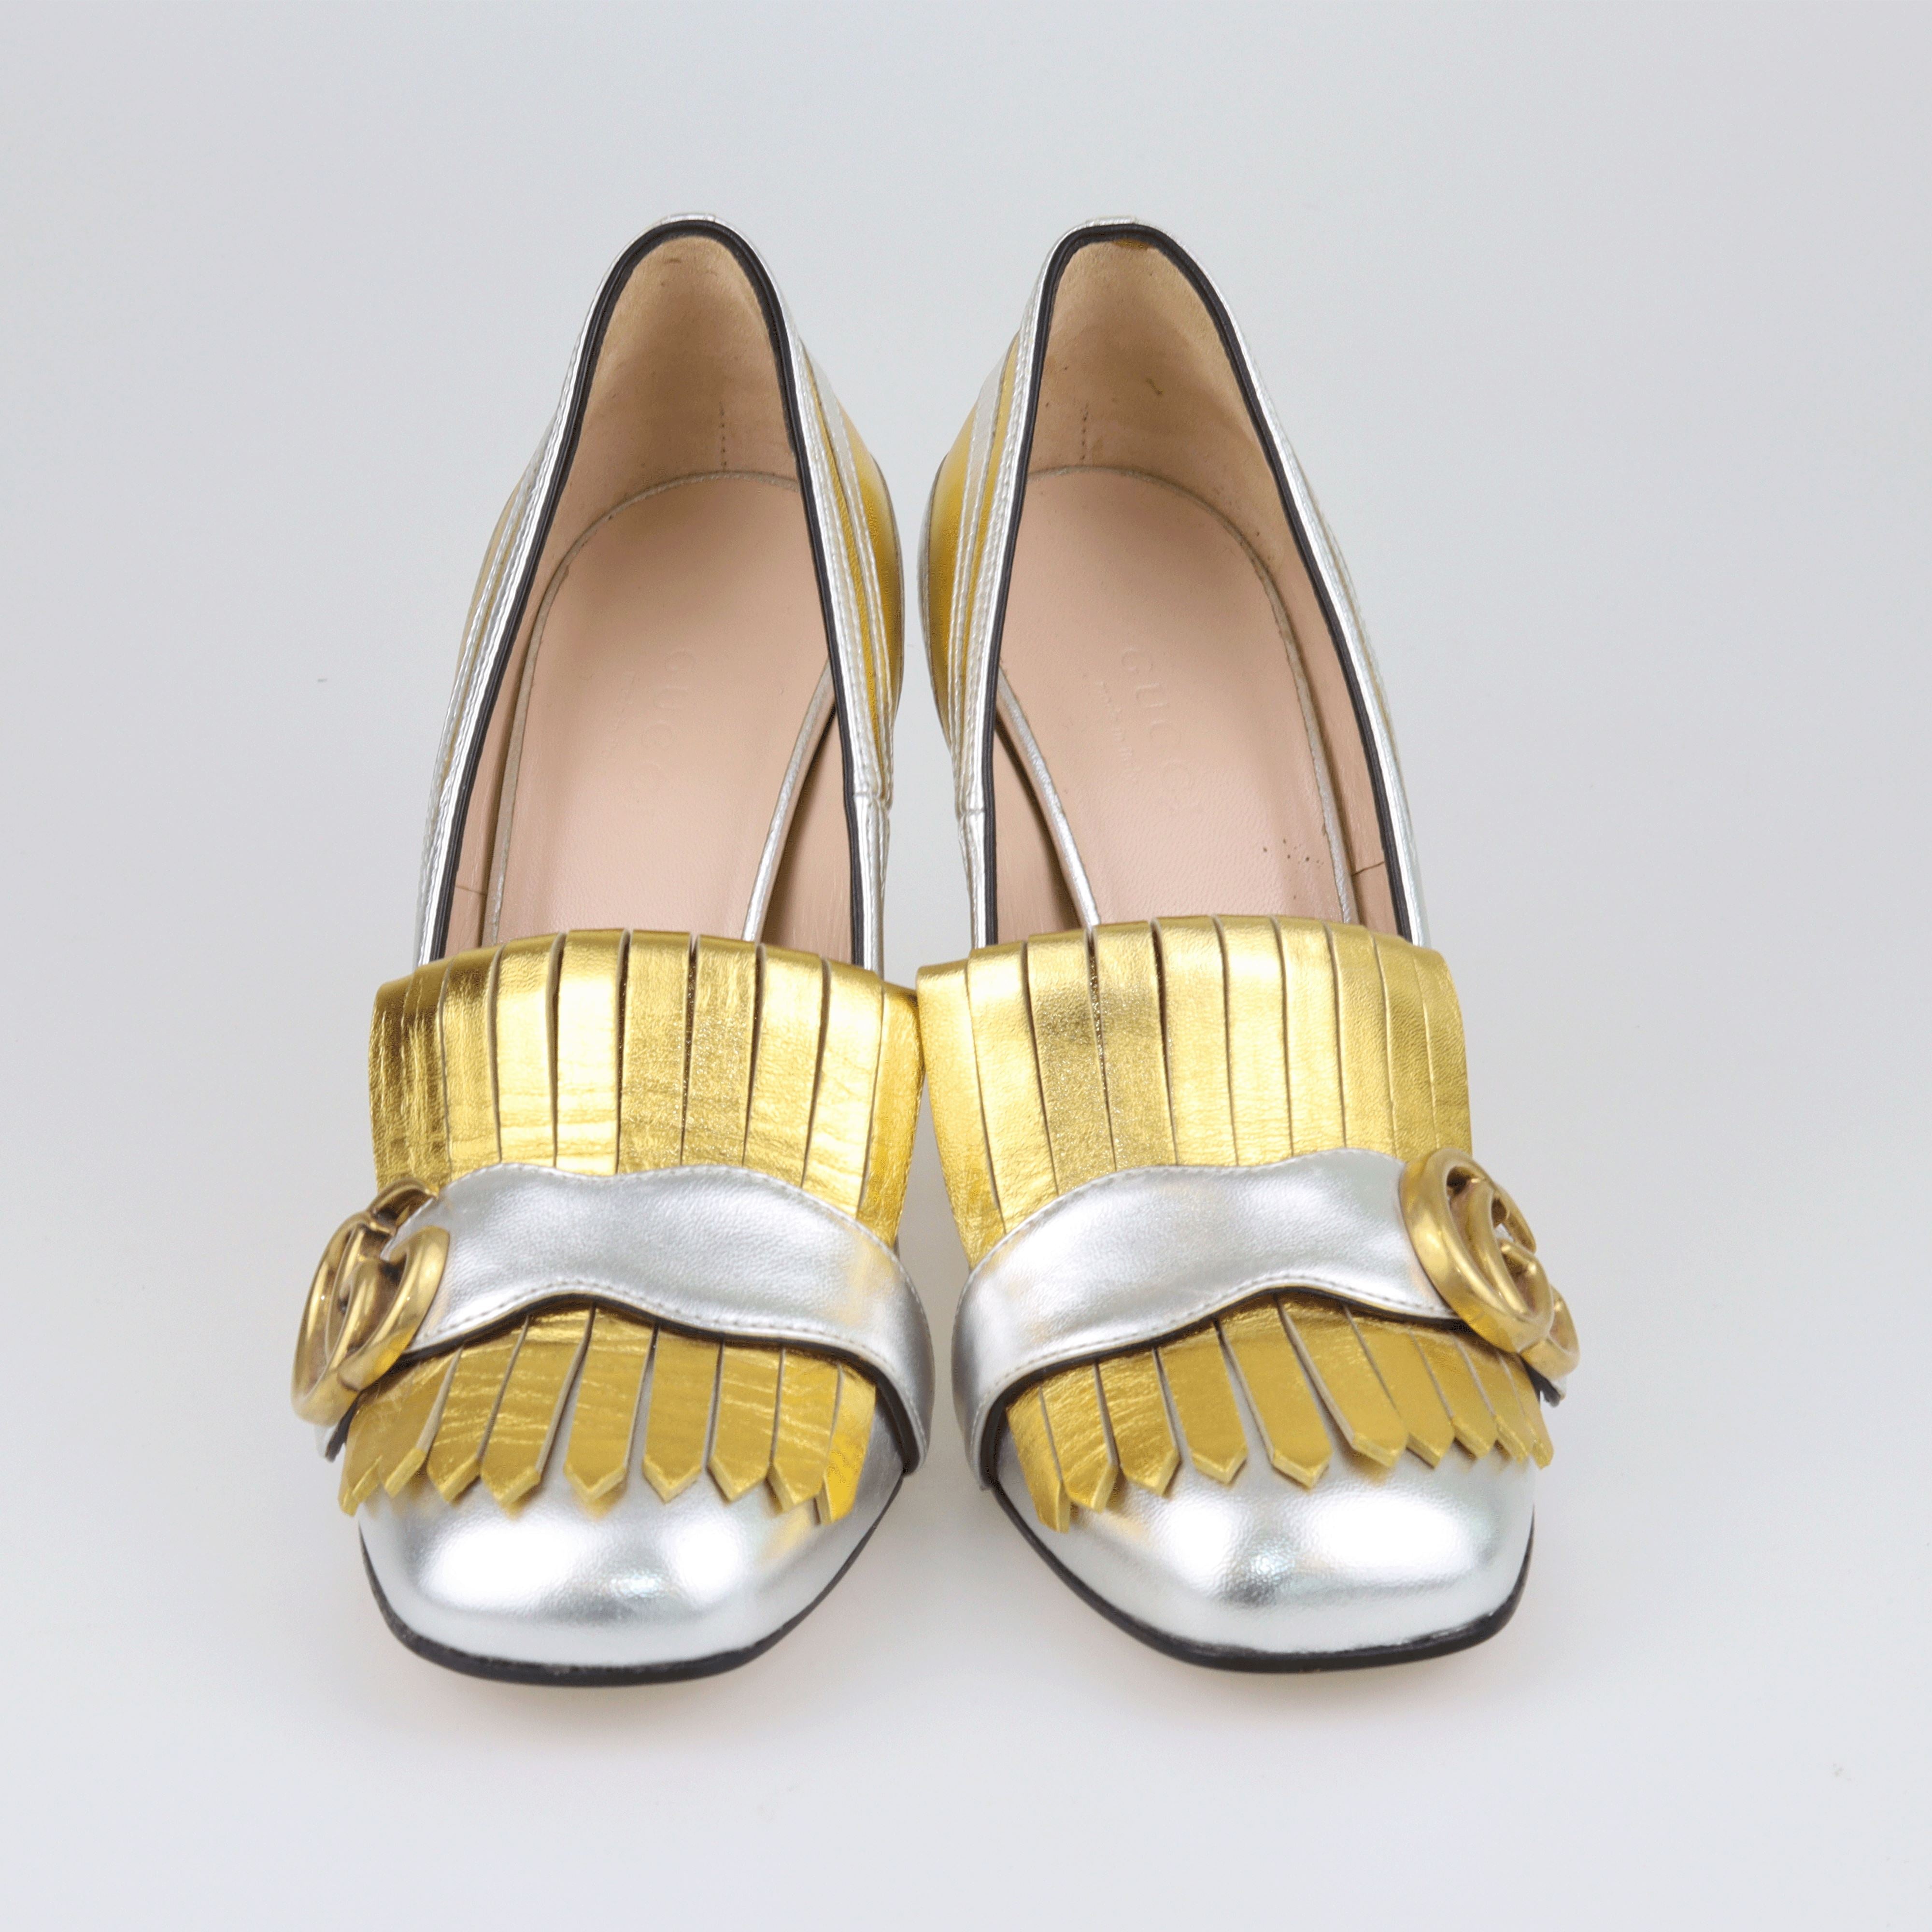 Silver/Gold Marmont Zebra Print Pumps Shoes Gucci 